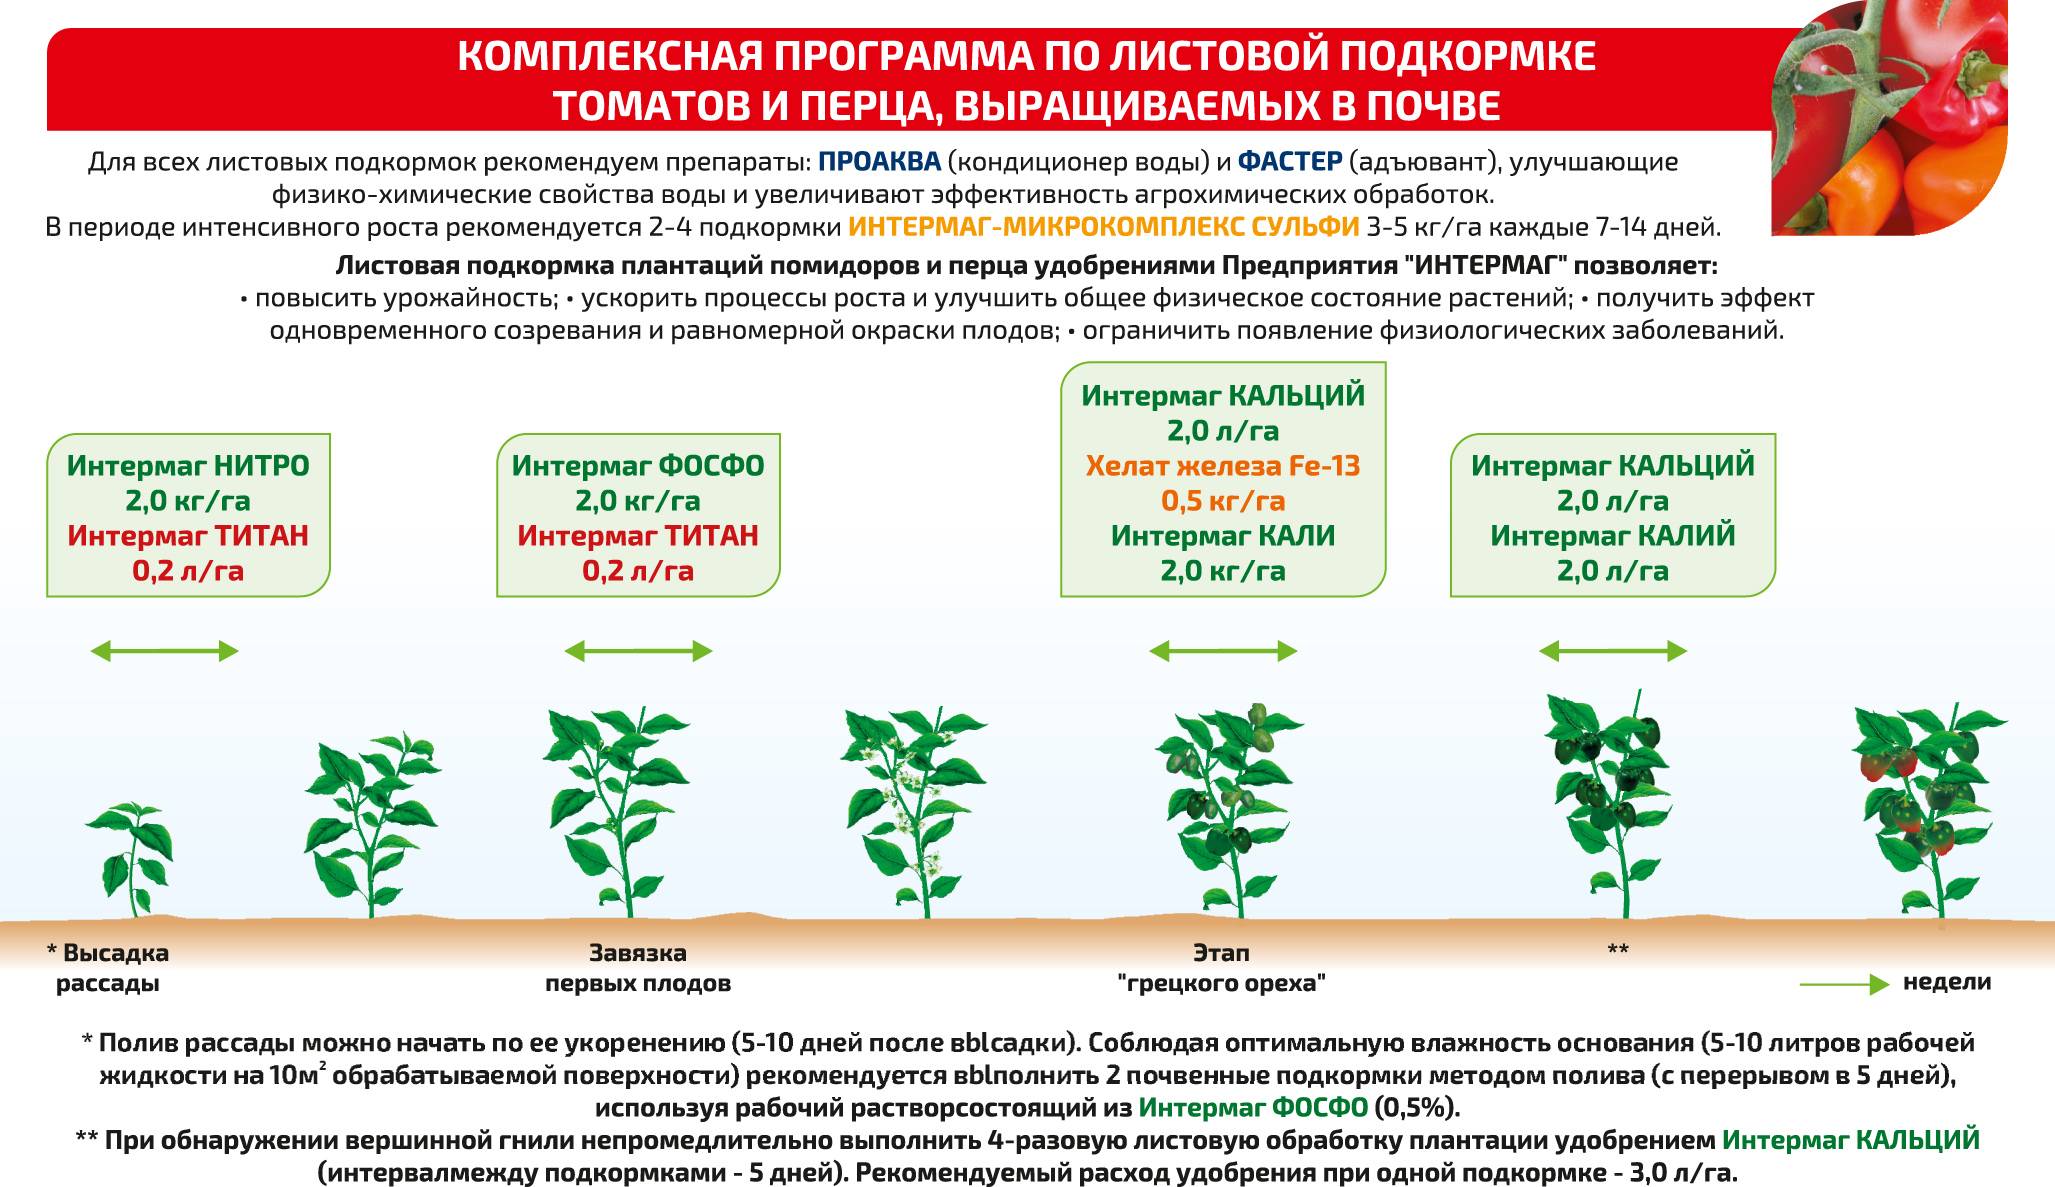 Подкормка огурцов в разные периоды для увеличения урожая в два раза